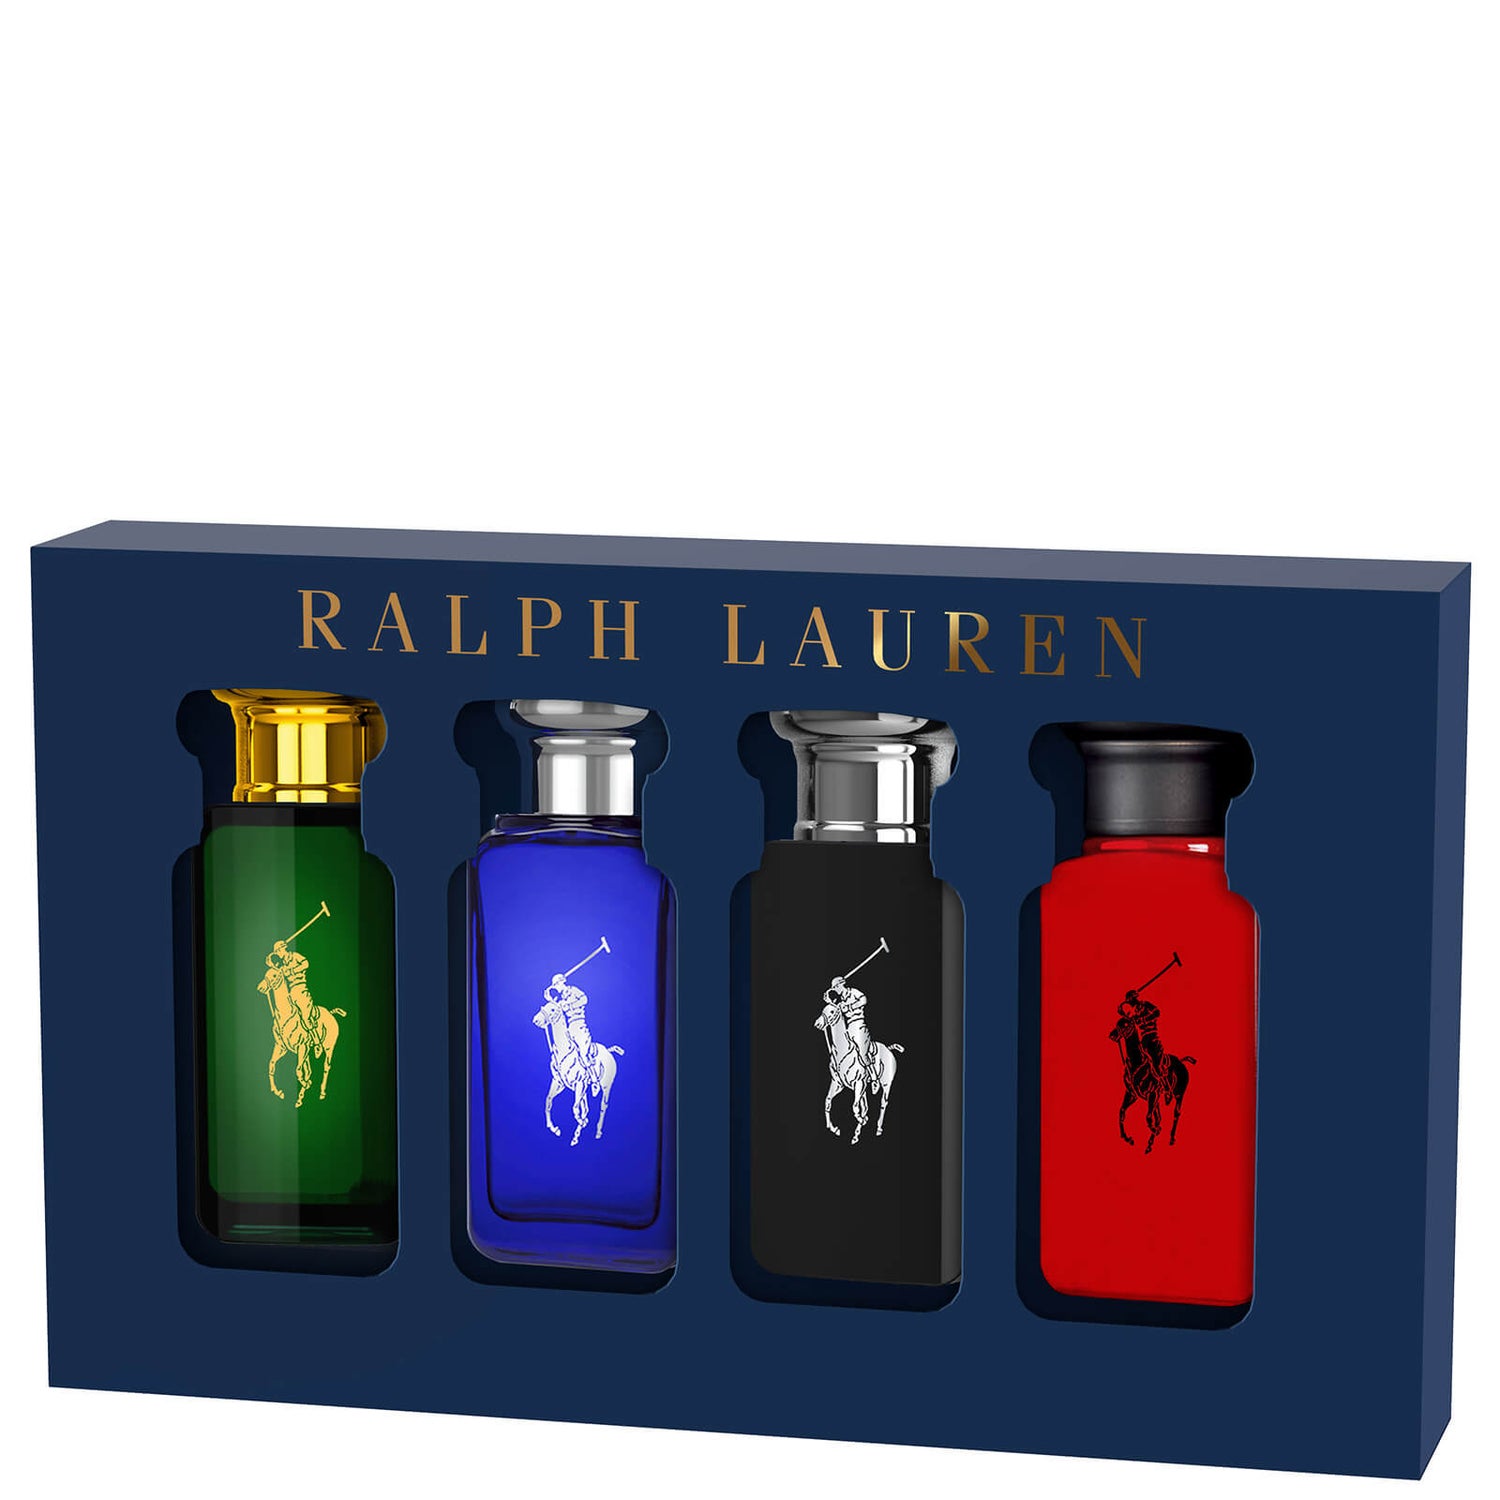 Ralph Lauren World of Polo Collection Eau de Toilette 4 x 30ml Gift Set (αξίας £60.00)